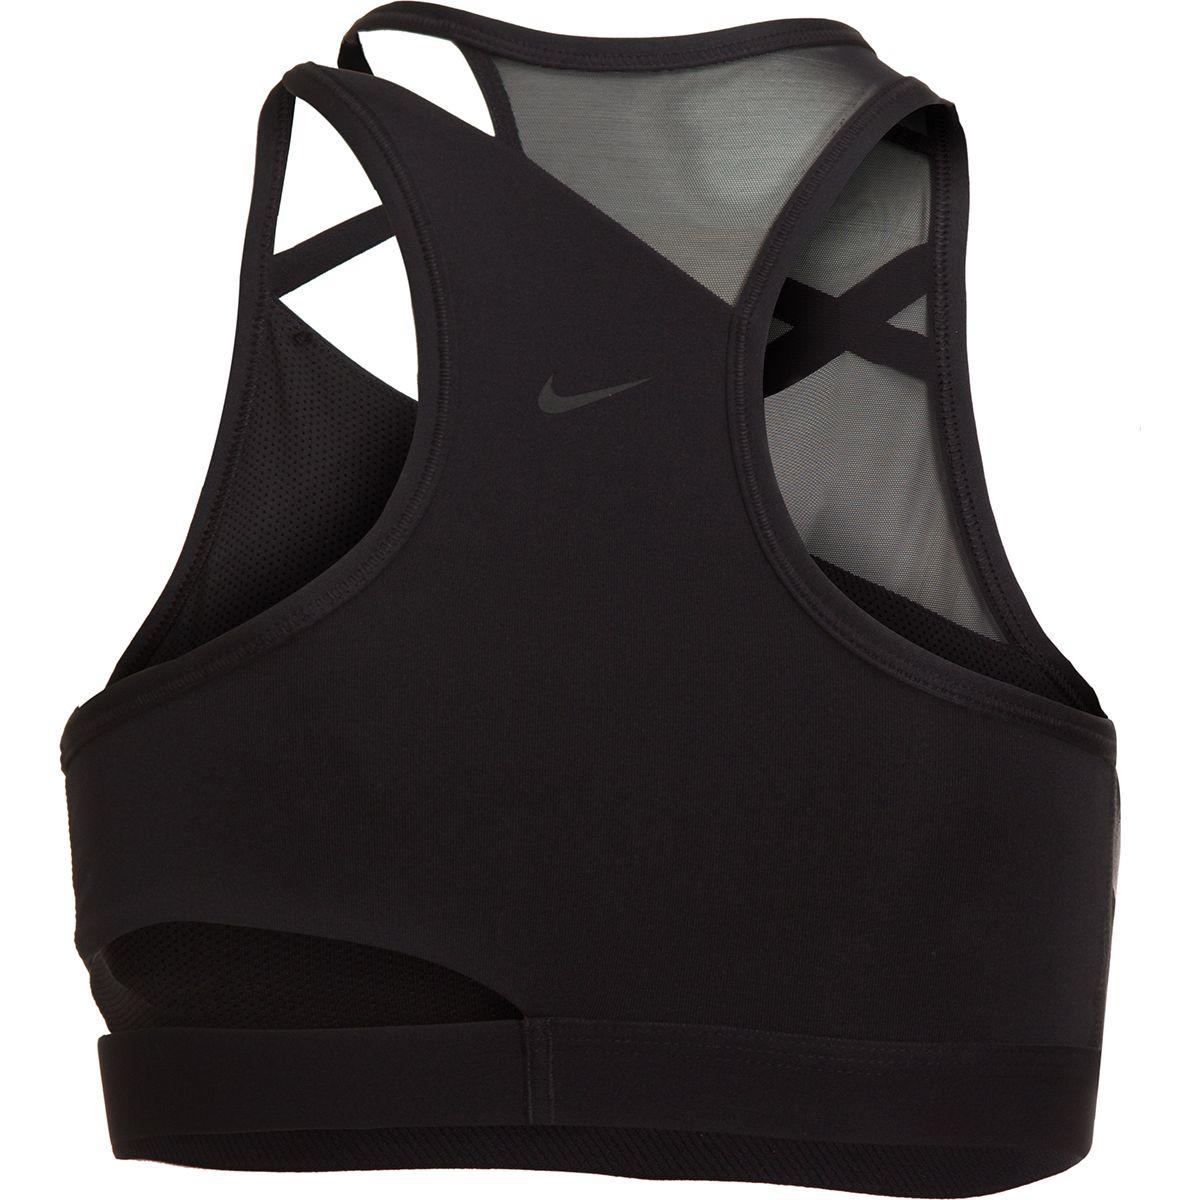 Nike Synthetic Swoosh Rebel Slash Sports Bra in Black/Black (Black) - Lyst